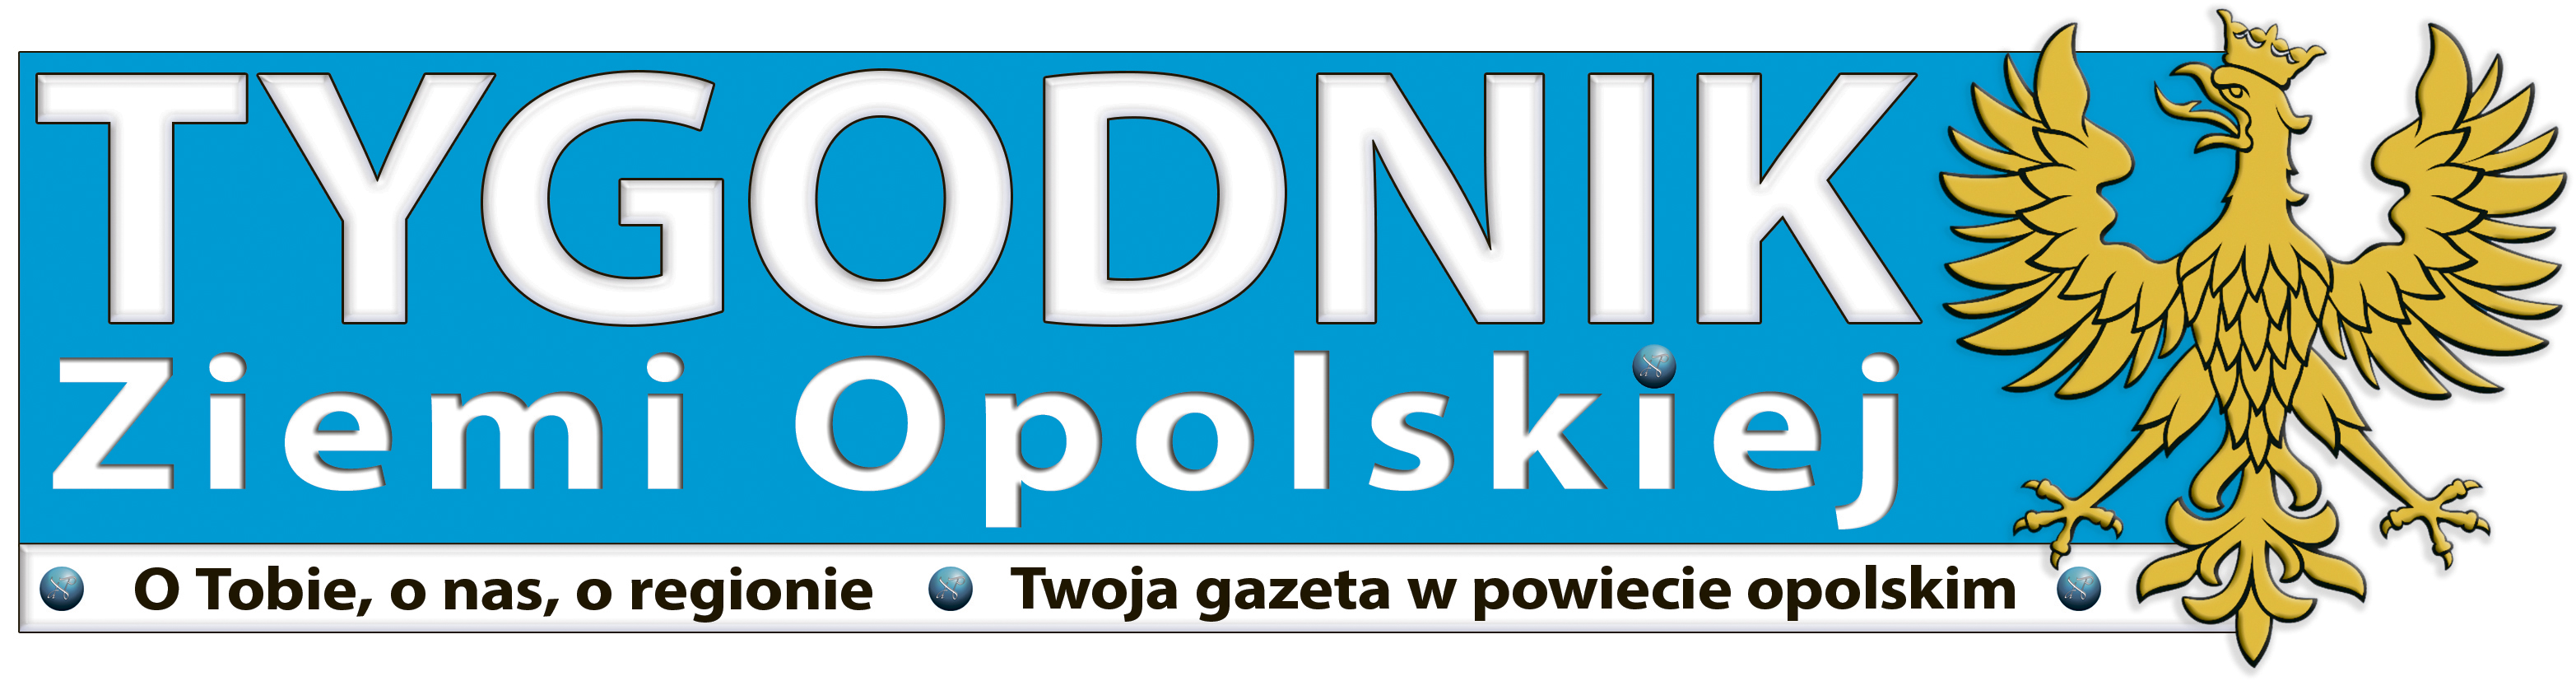 Tygodnik Ziemi Opolskiej logo